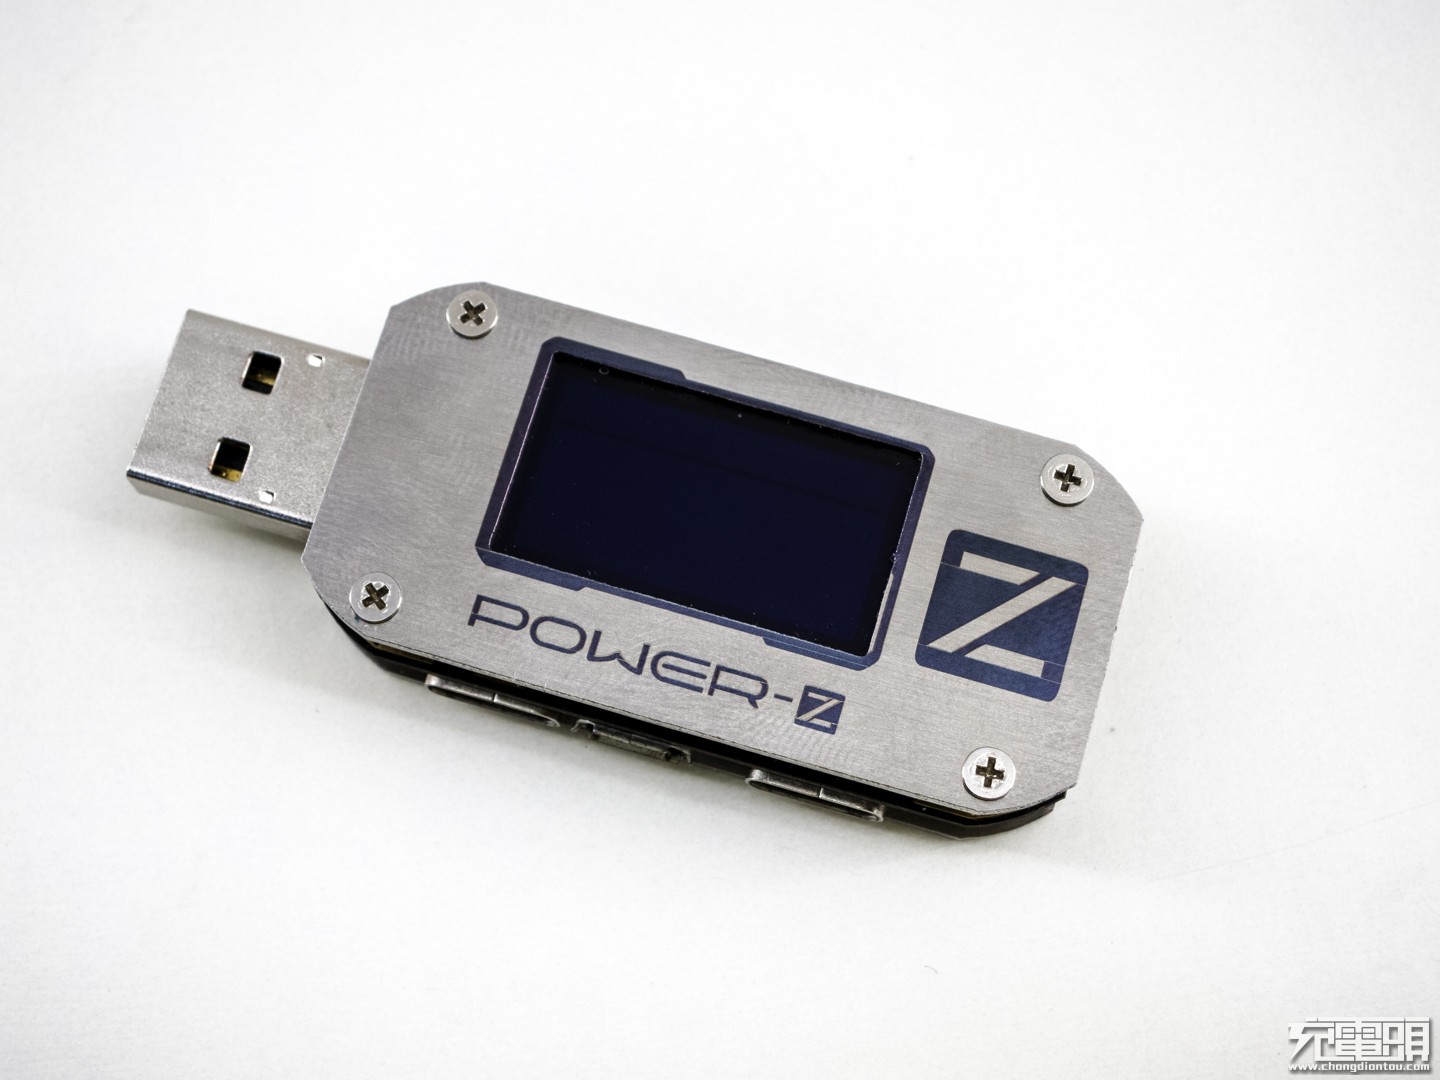 POWER-Z KM001更换金属面板闪亮登场-POWER-Z